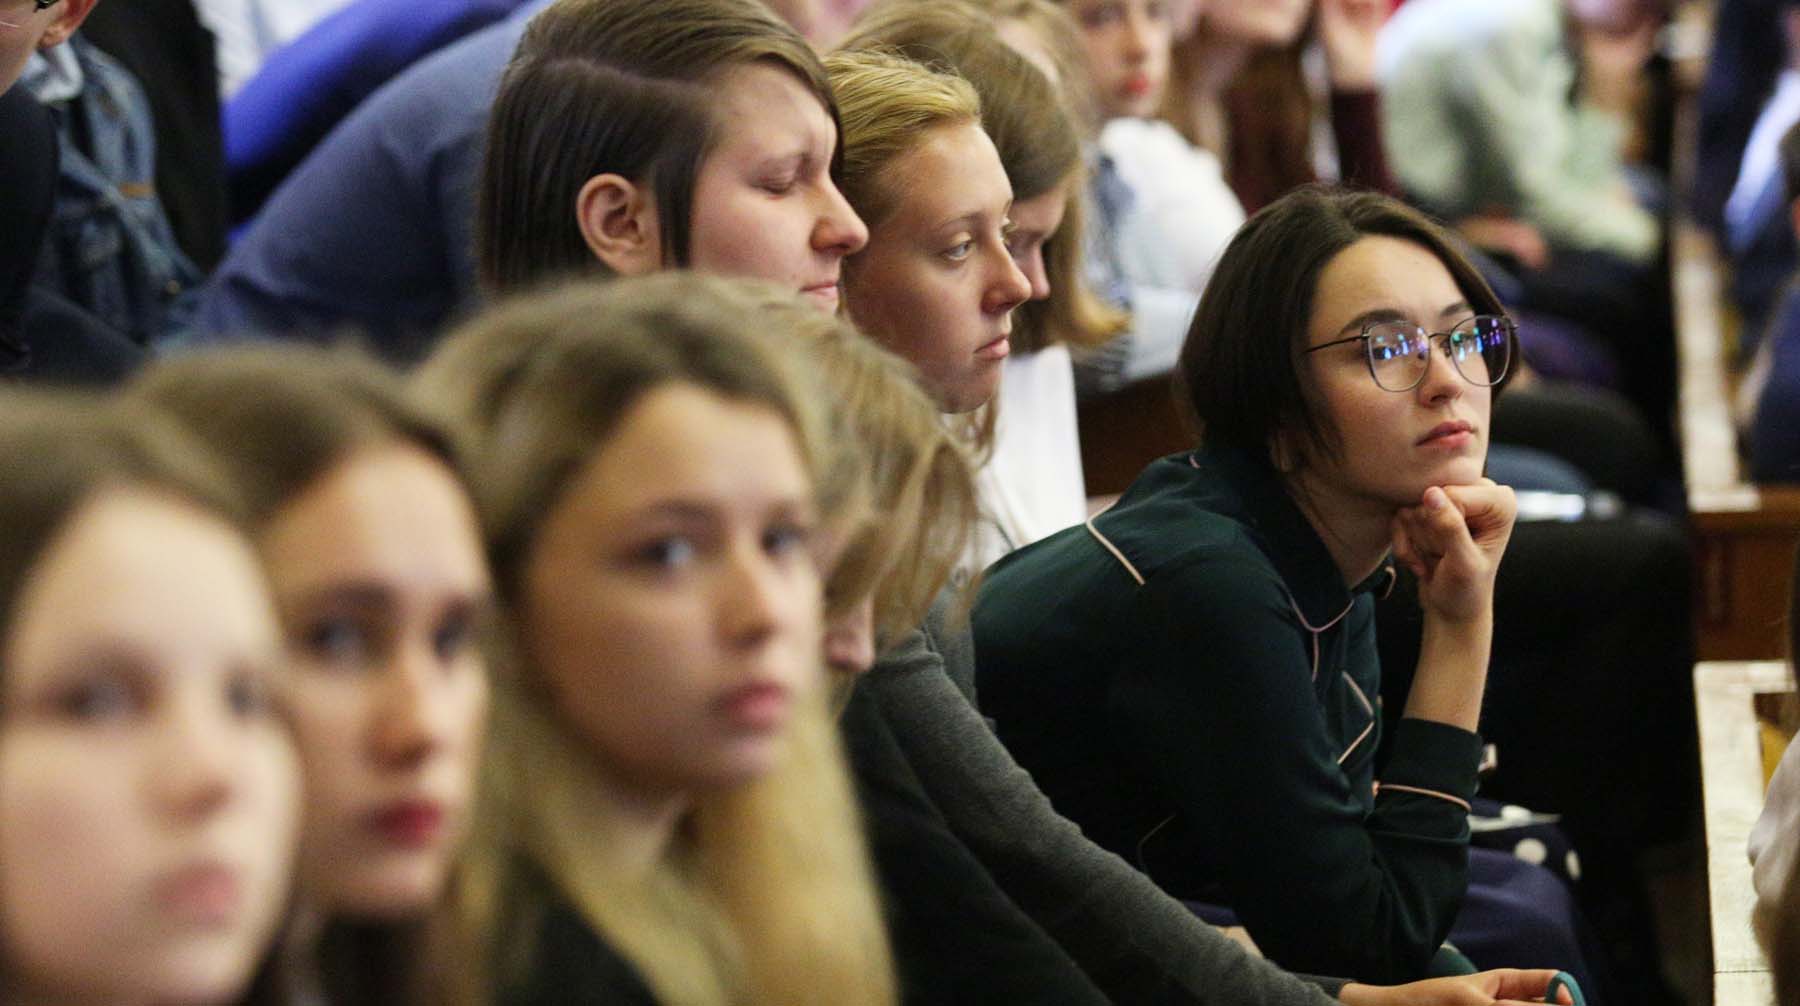 Университеты будут обязаны не допускать к занятиям тех, у кого есть симптомы COVID-19 Фото: © Global Look Press / АГН Москва